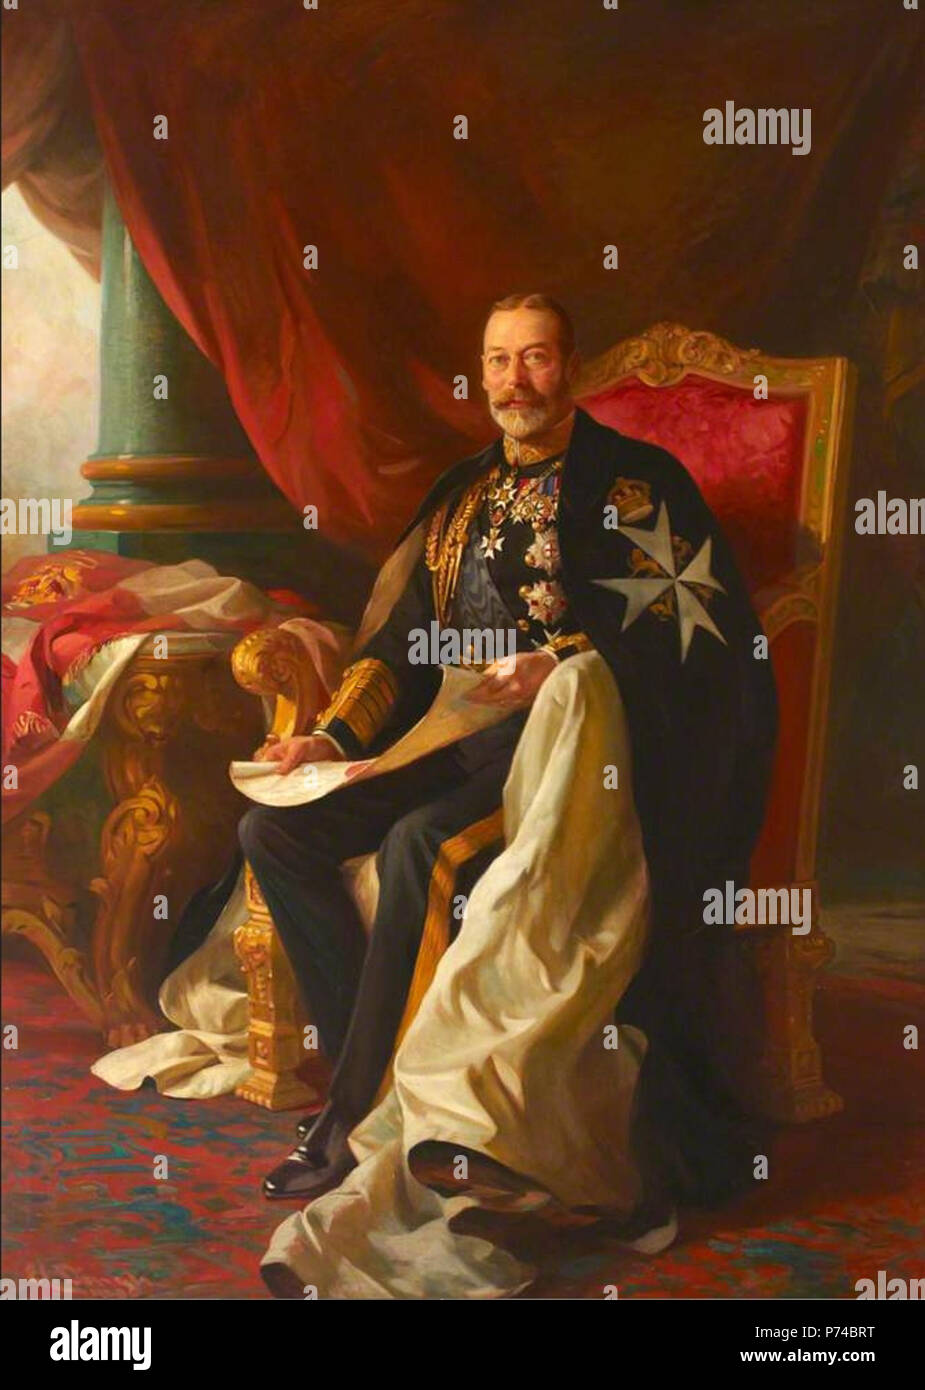 Questa è un immagine di HM King George V del Regno Unito. Egli è mostrato che indossa le vesti come testa di sovrano del Venerabile dell'Ospedale di San Giovanni di Gerusalemme. circa 1920 3 HM King George V come Grand Master Foto Stock